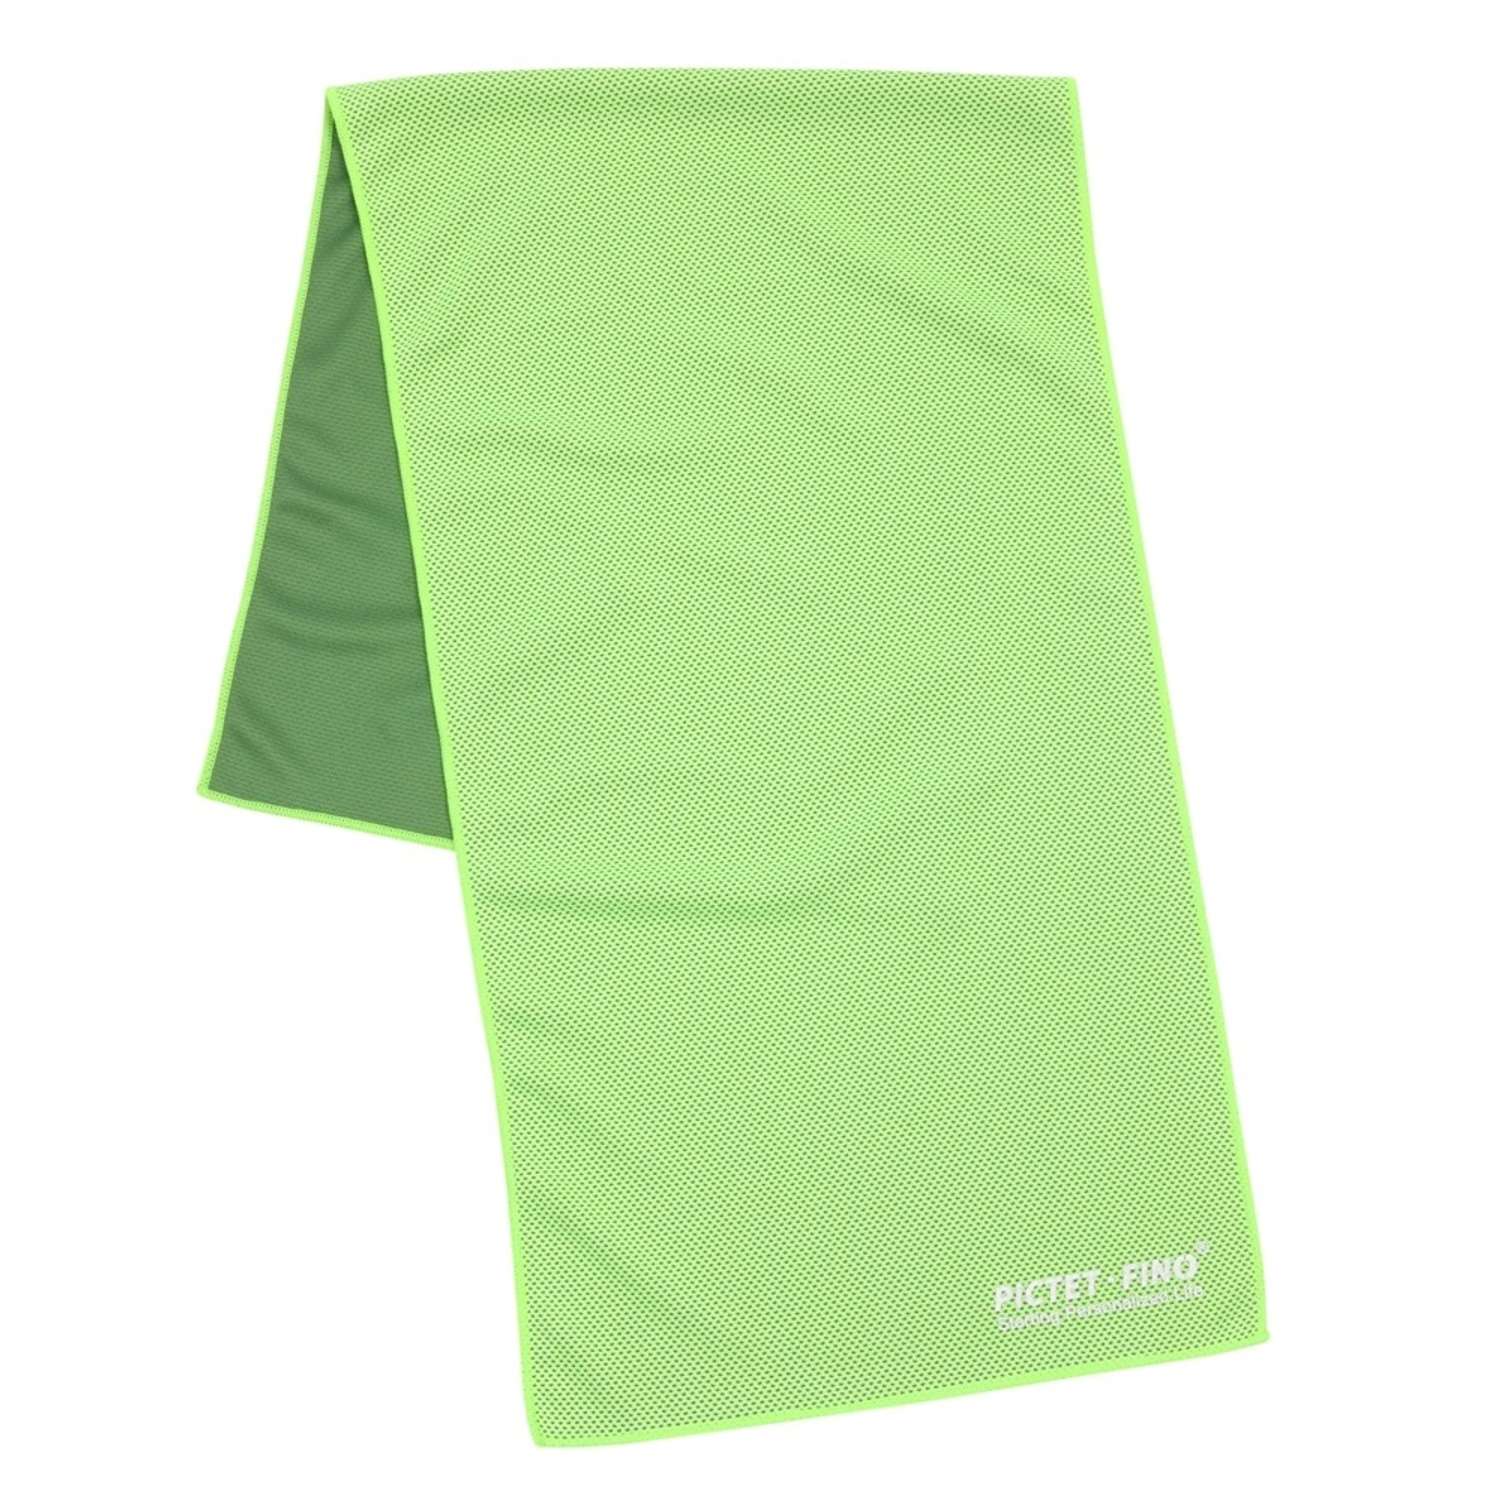 Спортивное полотенце PICTET FINO охлаждающее зеленое в пластиковой банке - фото 2